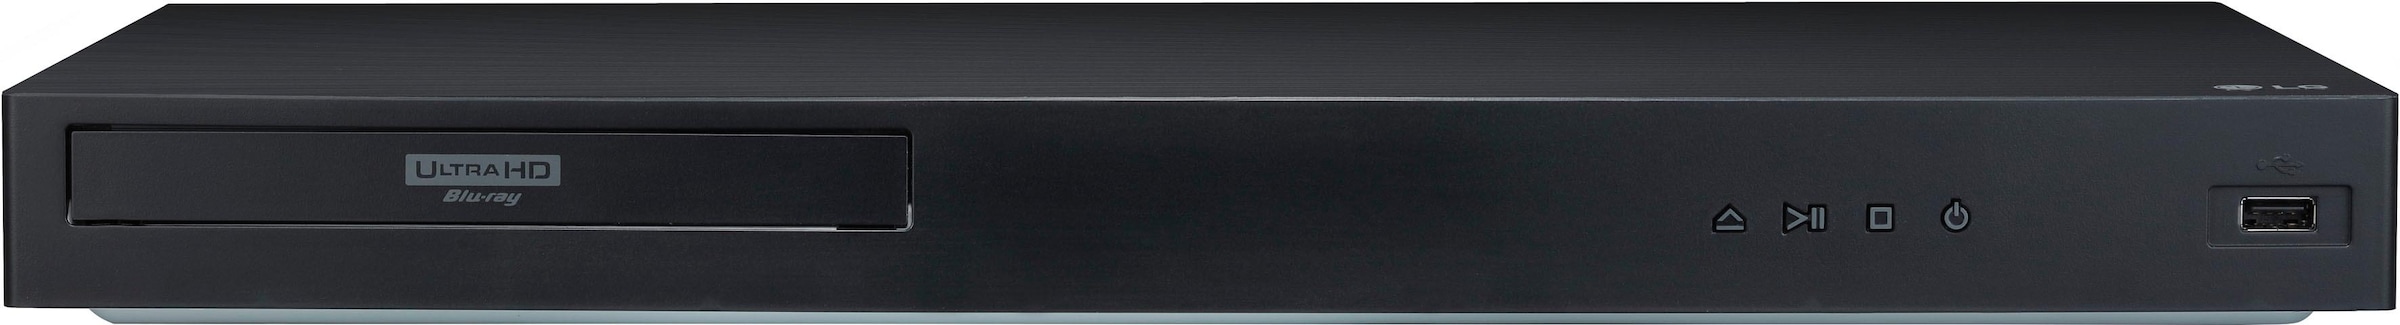 LG Blu-ray-Player »UBK90«, 4k Ultra HD, WLAN, 4K Upscaling